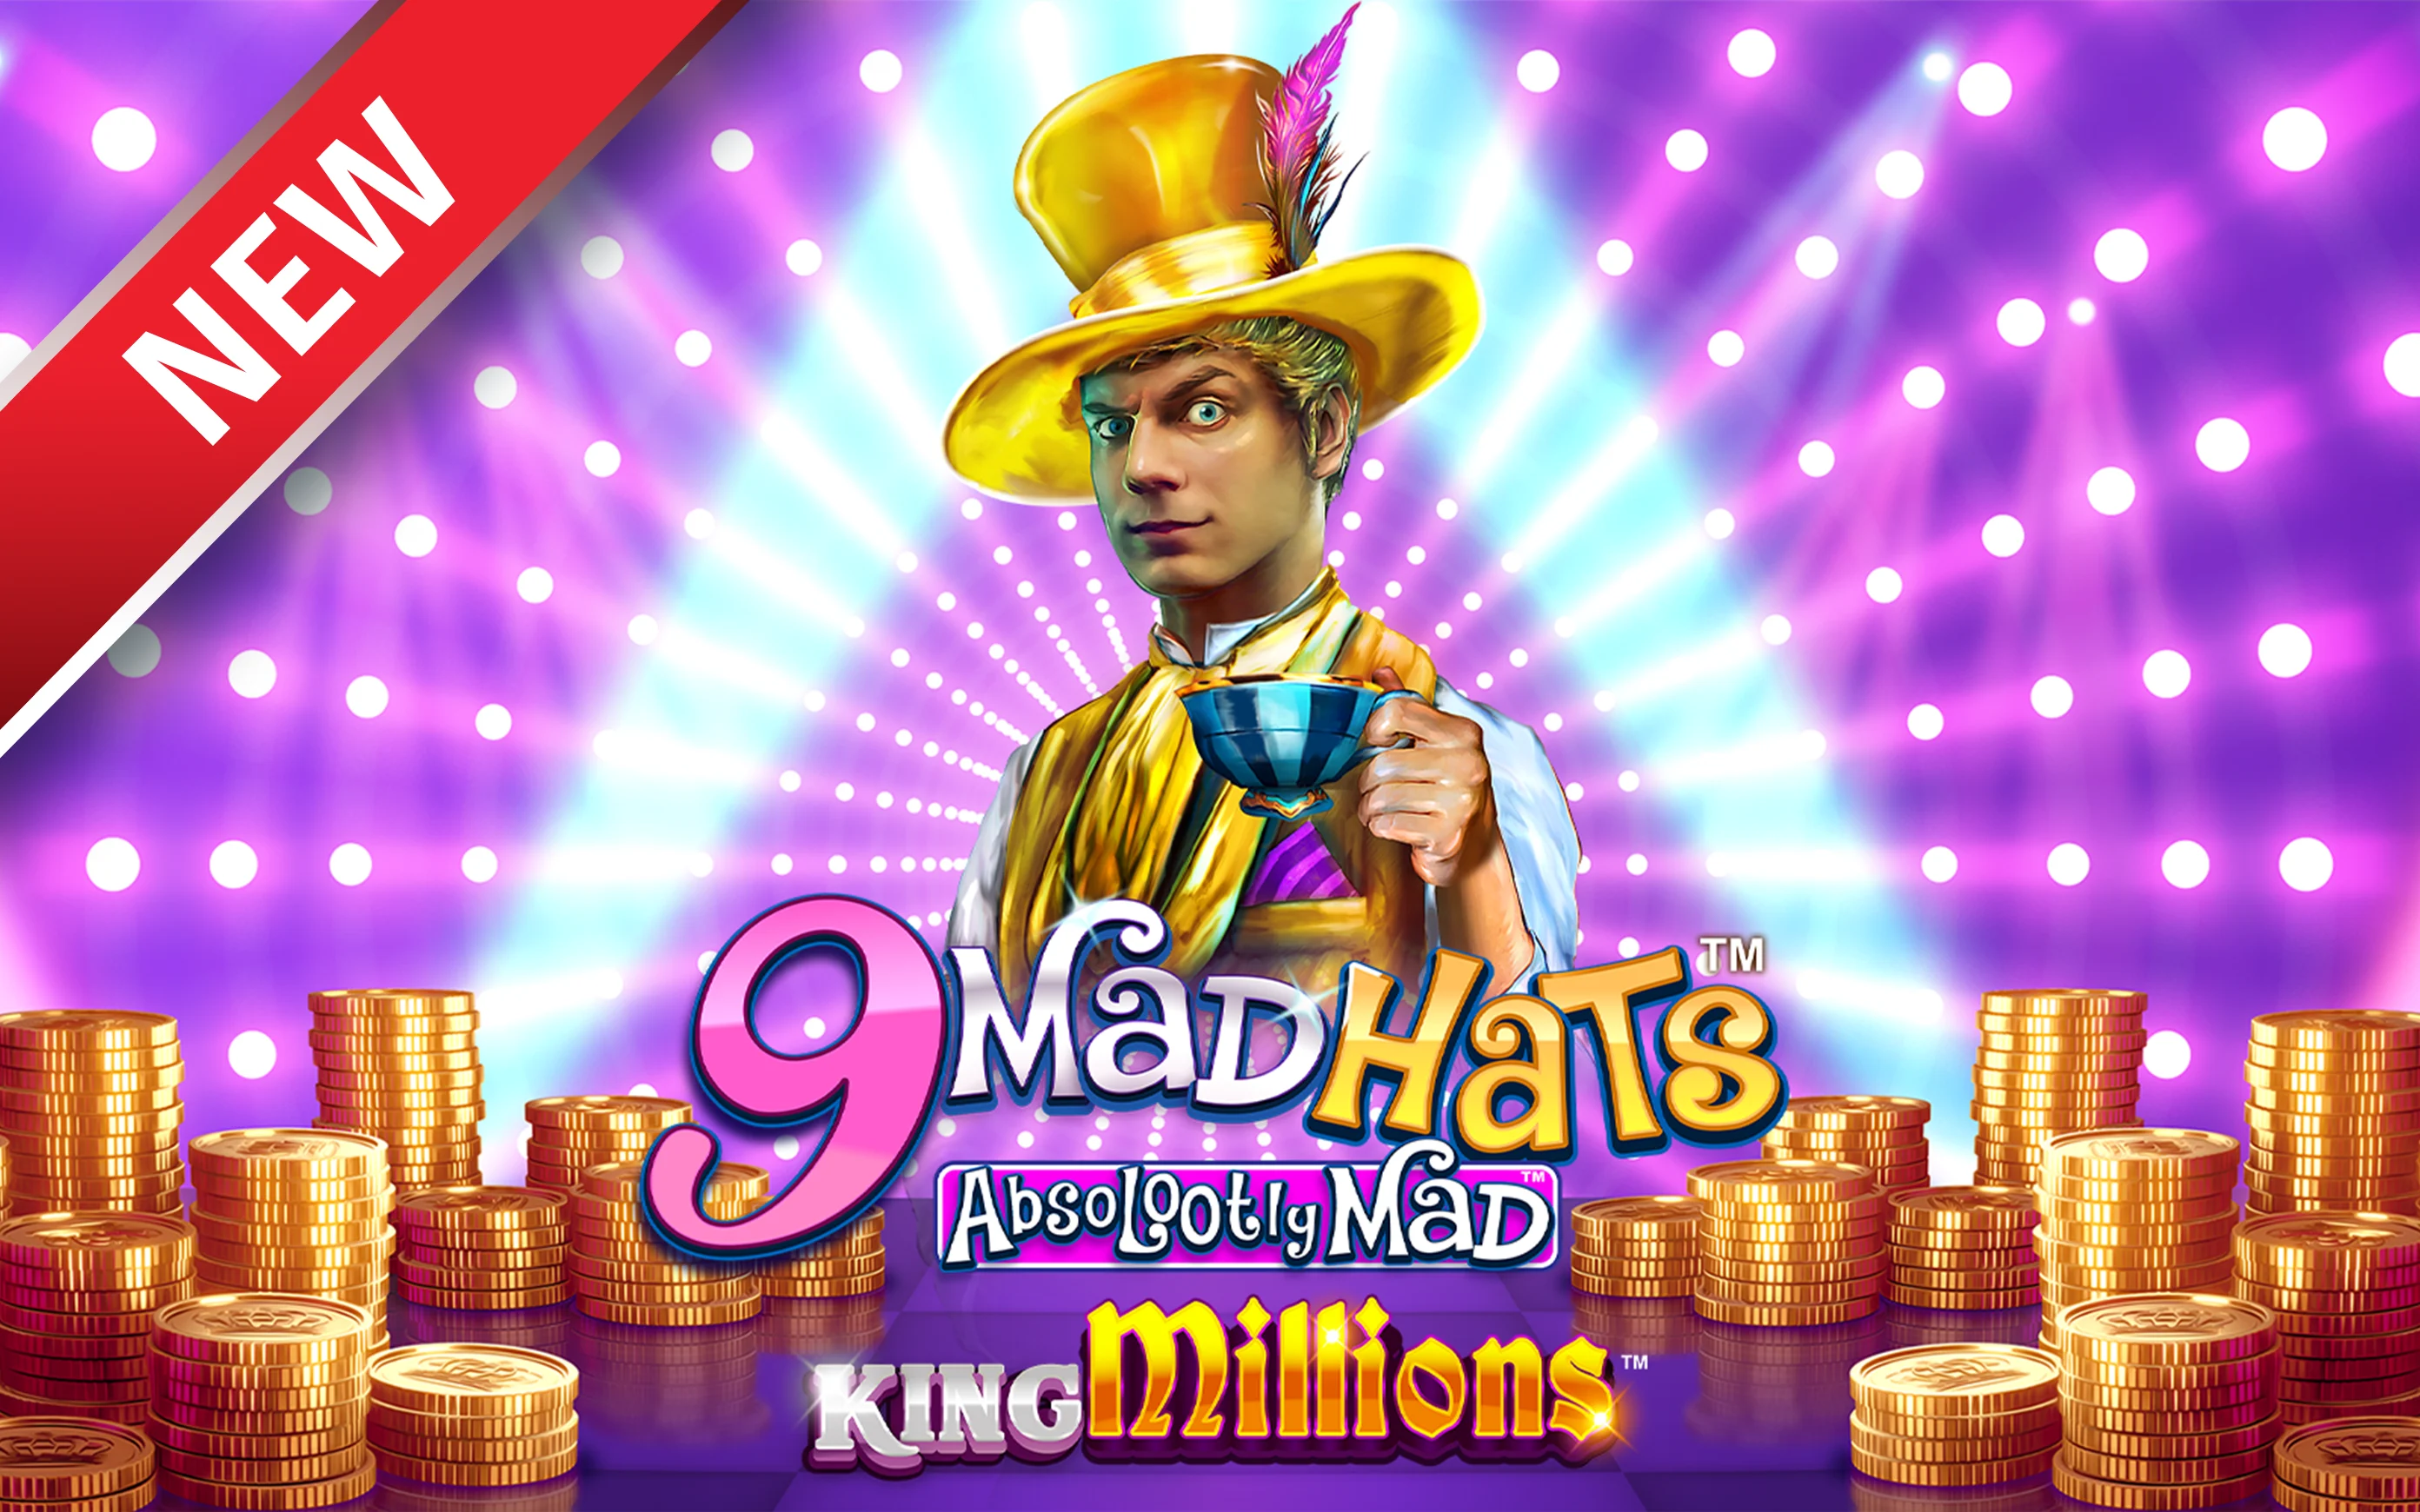 Chơi 9 Mad Hats™ King Millions™ trên sòng bạc trực tuyến Starcasino.be